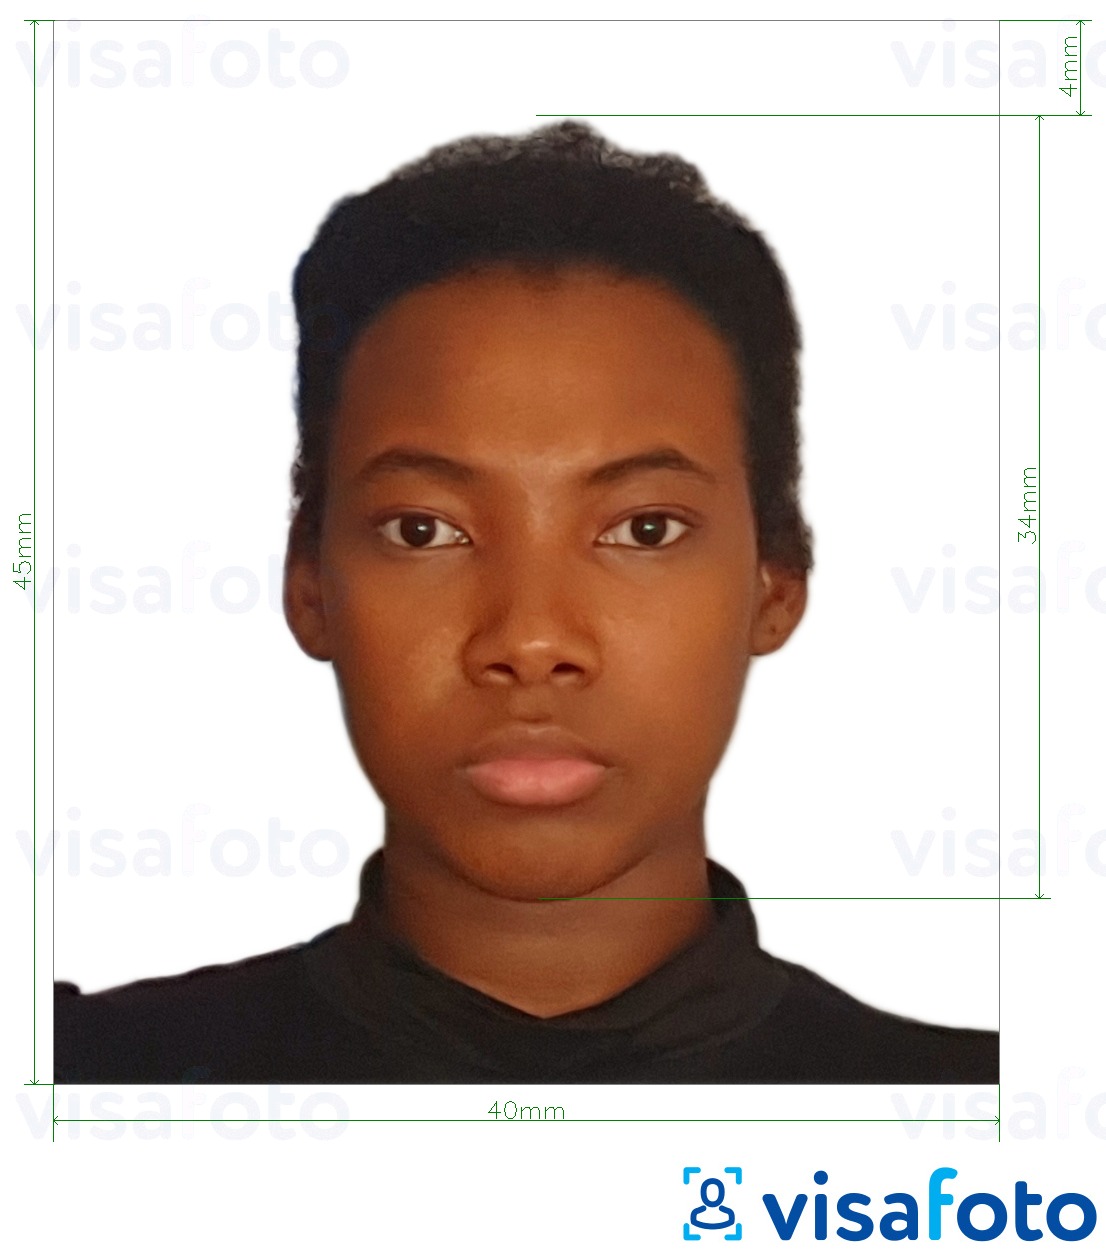 Exemple de foto per a Passaport de Tanzània 40x45 mm (4x4,5 cm) amb la mida exacta especificada